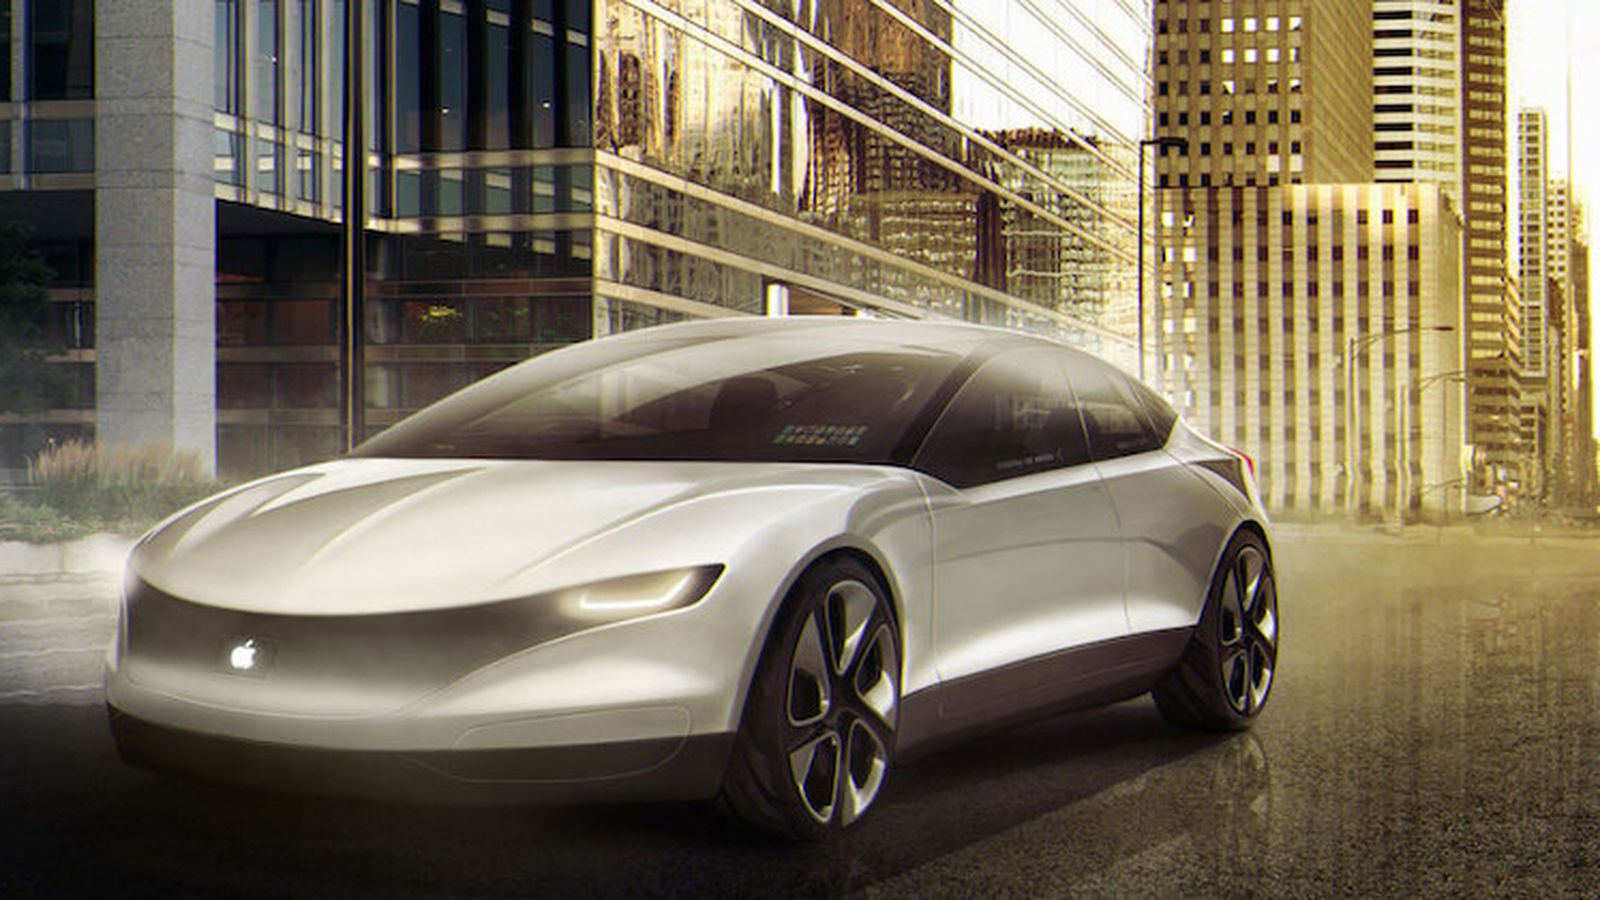 Электромобиль Apple Car выйдет вместе с iPhone 13 в сентябре 2021